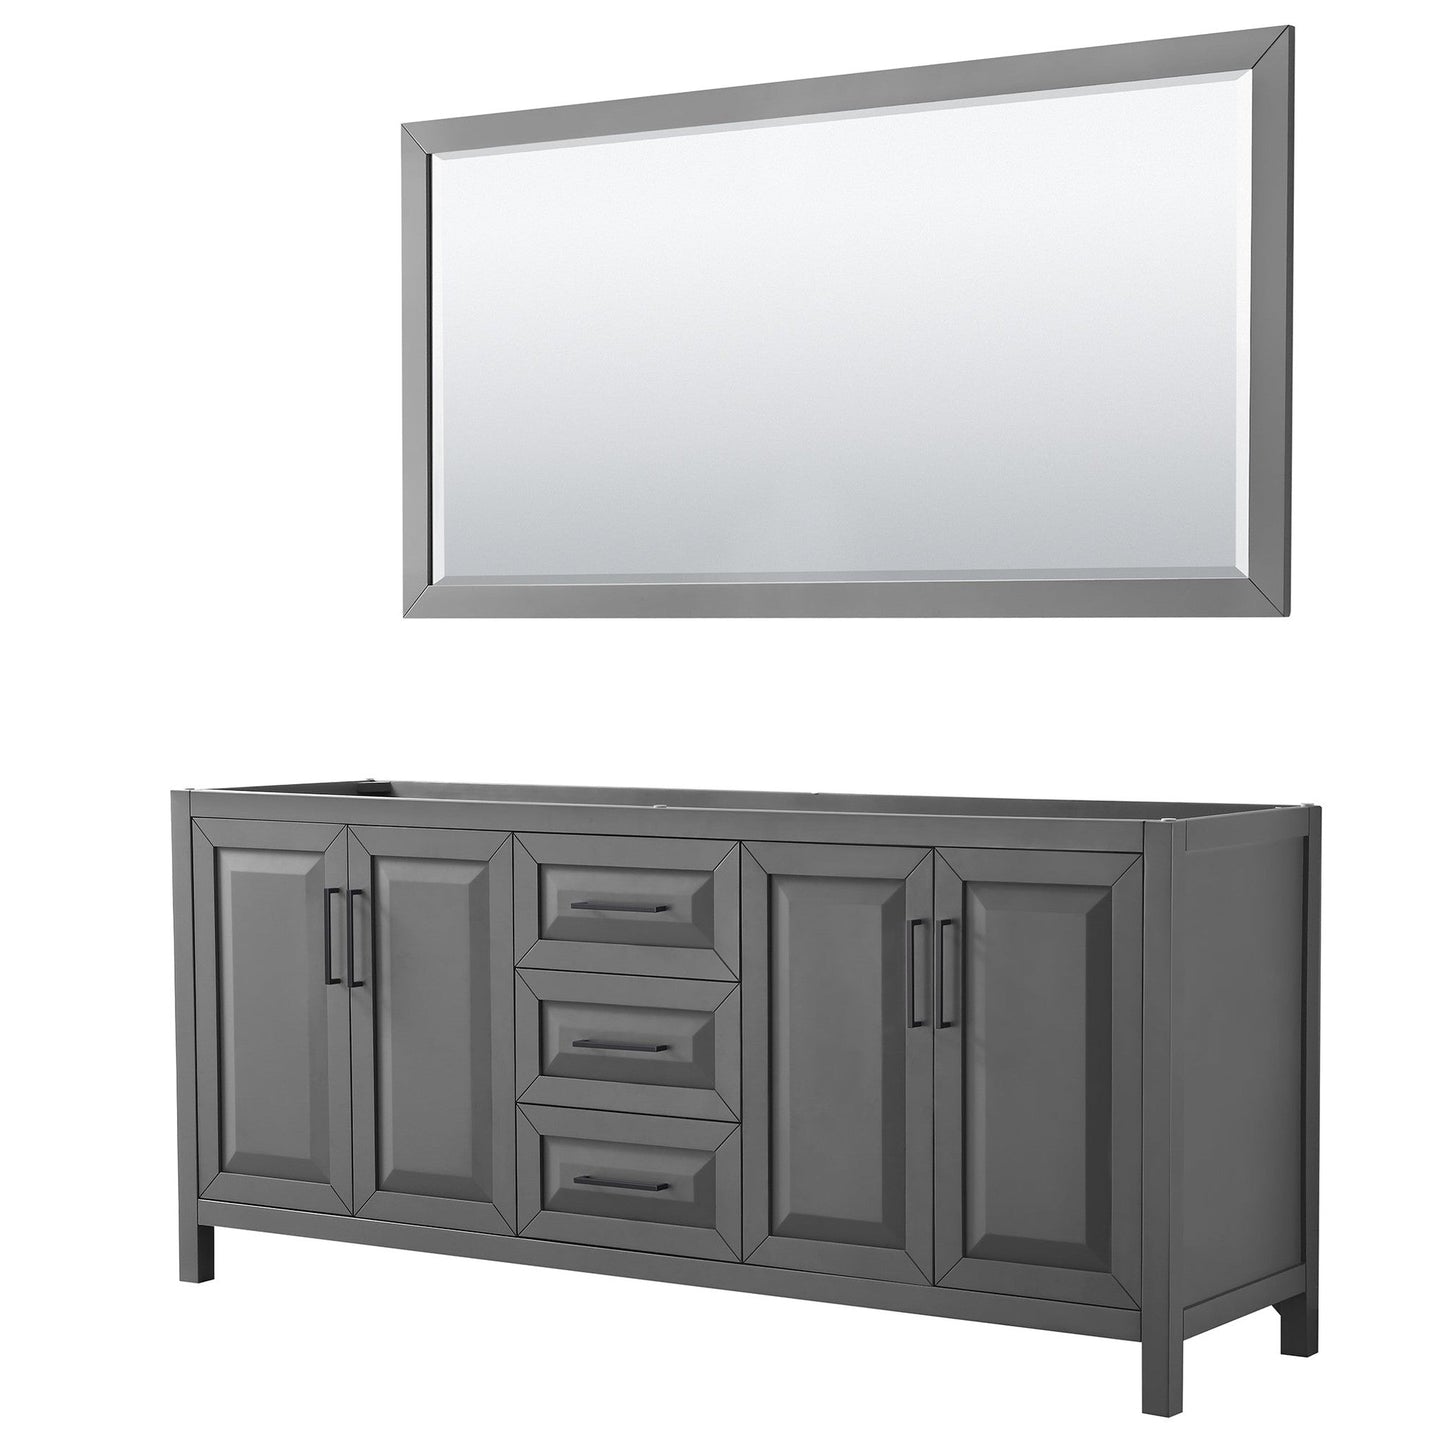 Daria 80" Double Bathroom Vanity in Dark Gray, No Countertop, No Sink, Matte Black Trim, 70" Mirror